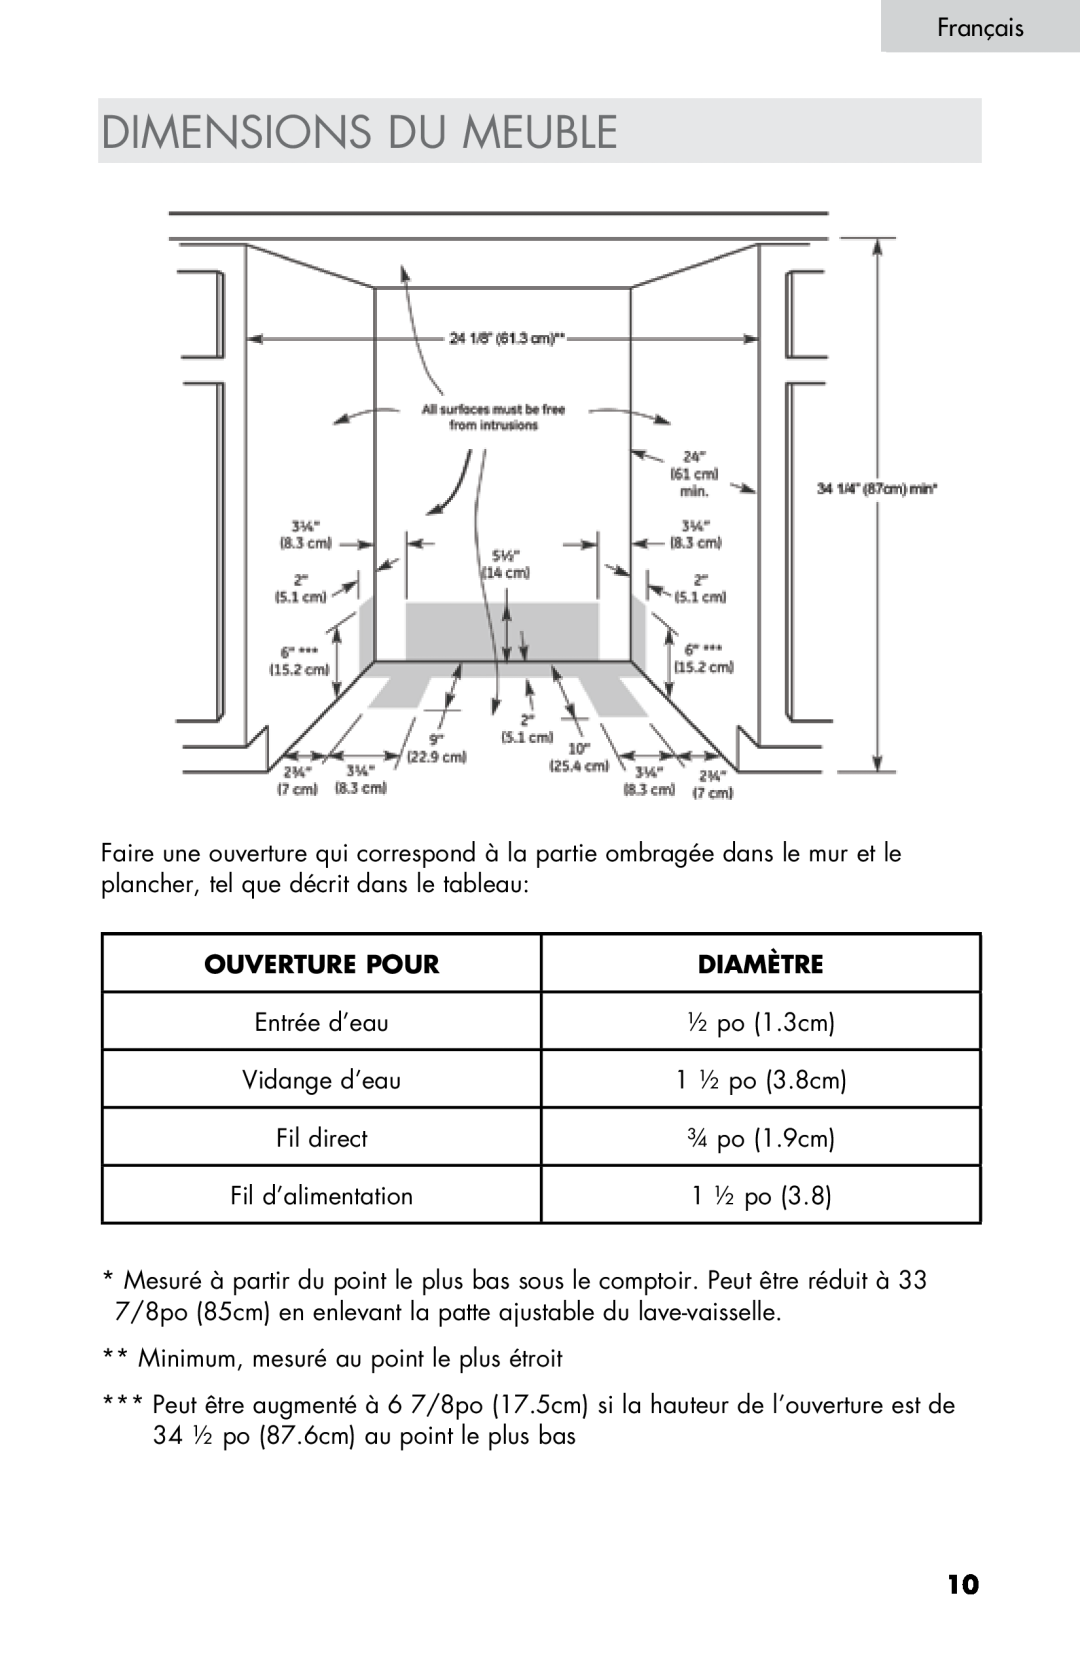 Haier DW-7777-01 manual Dimensions Du Meuble, Ouverture Pour, Diamètre, FrançaisE glish 